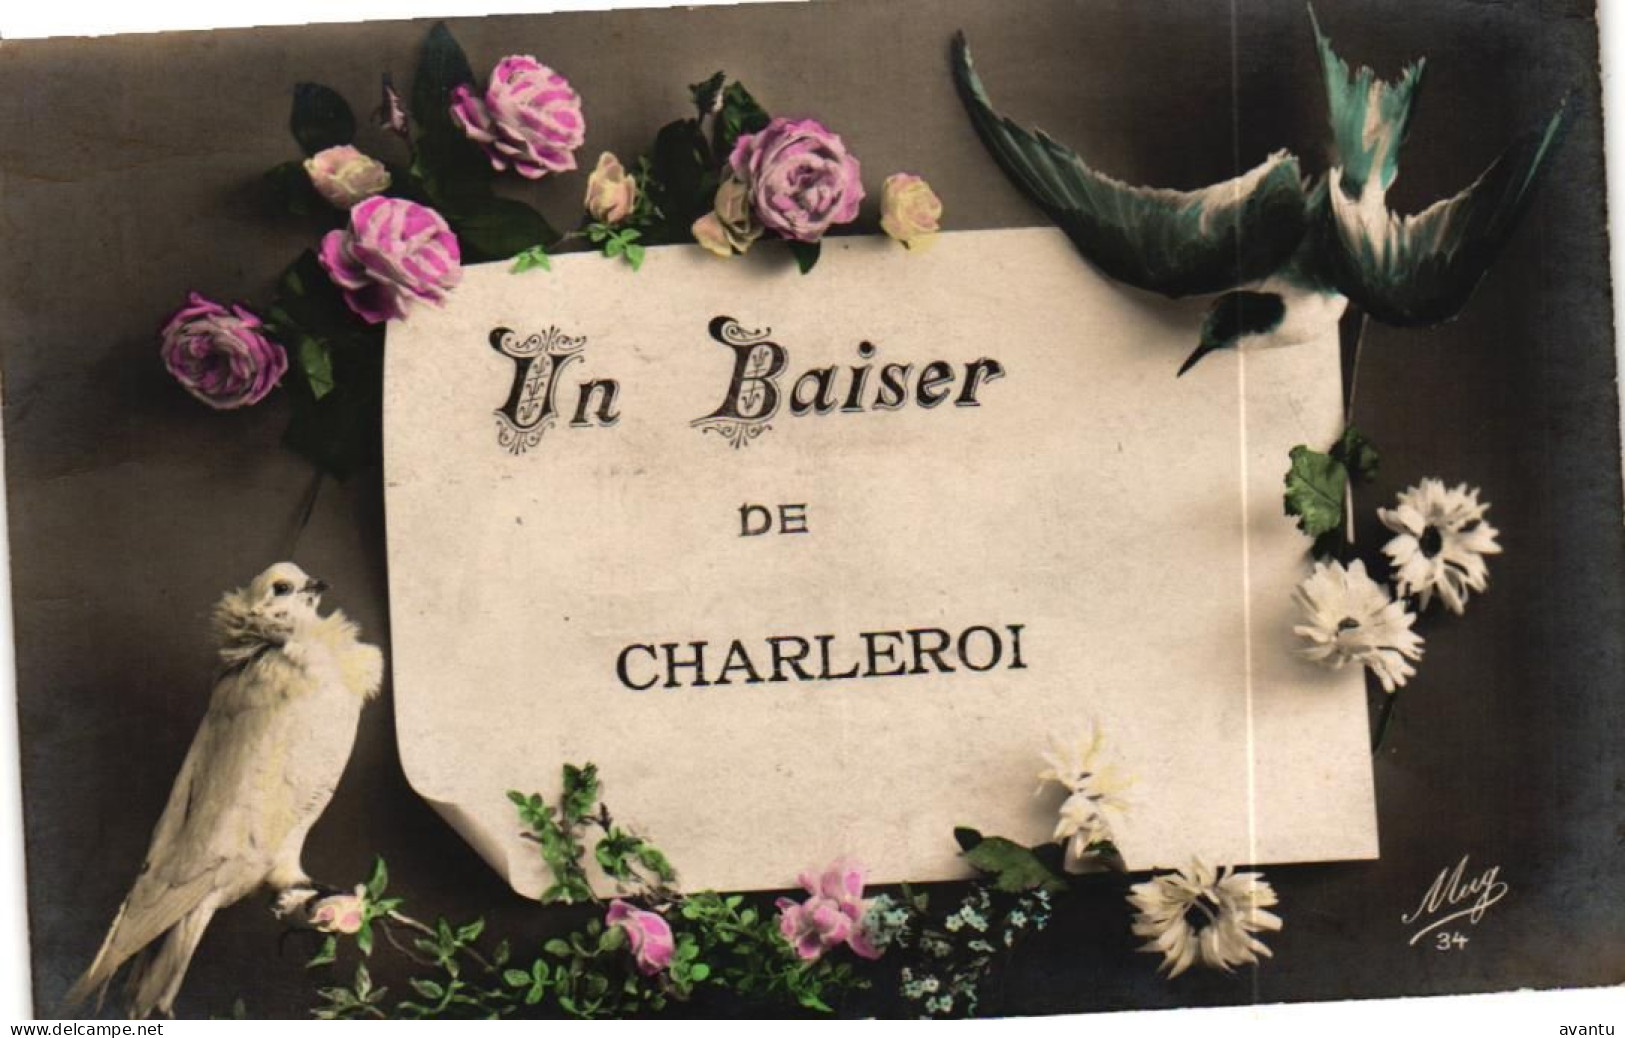 CHARLEROI / UN BAISER - Charleroi